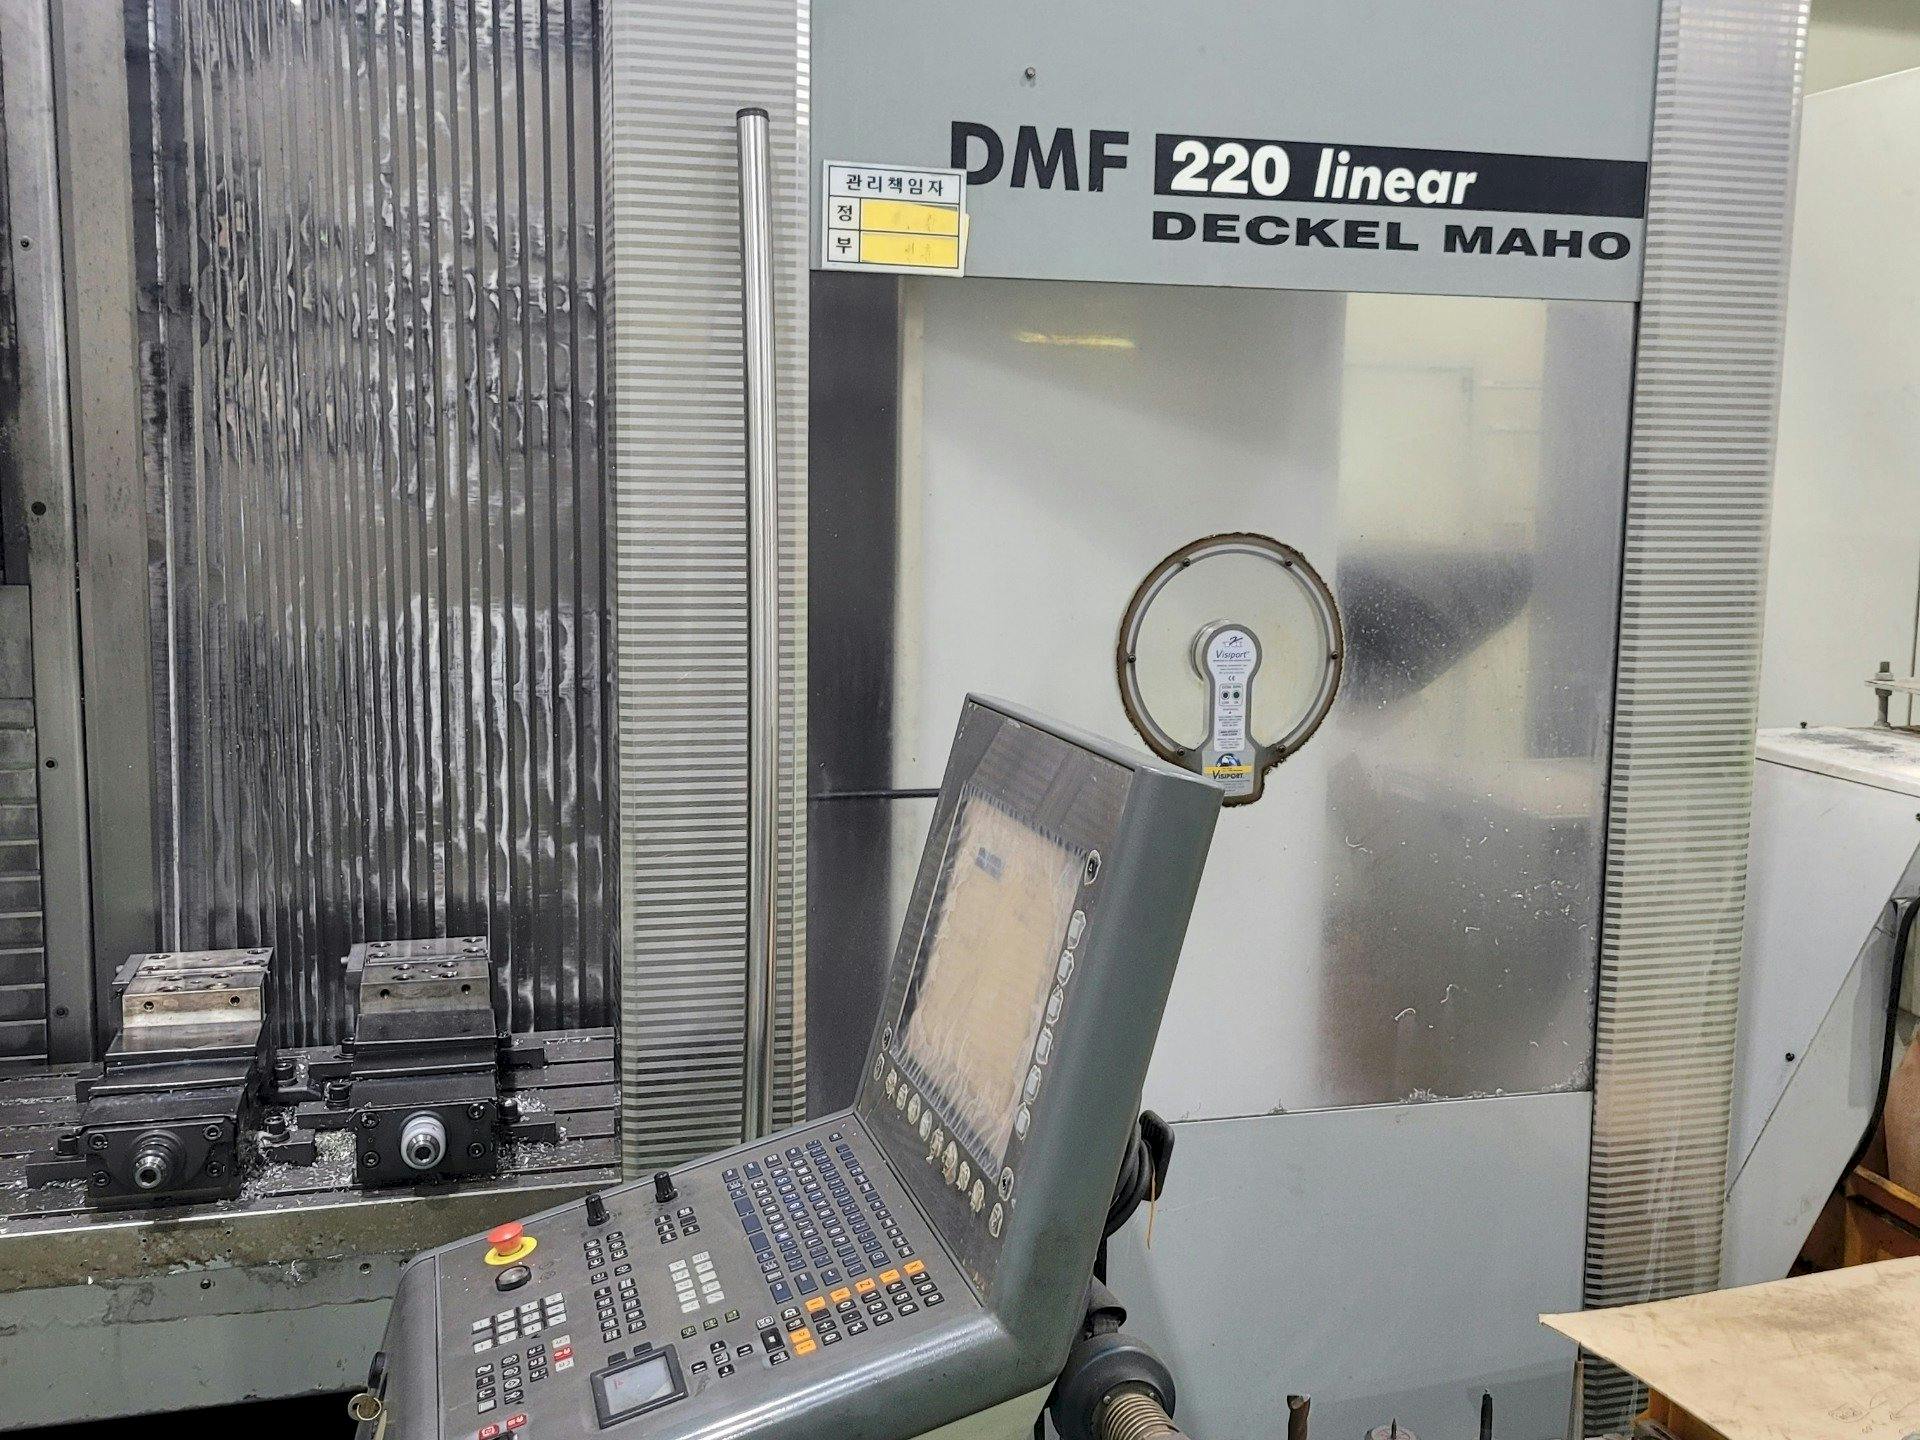 Vooraanzicht  van DECKEL MAHO DMF 220 Linear  machine